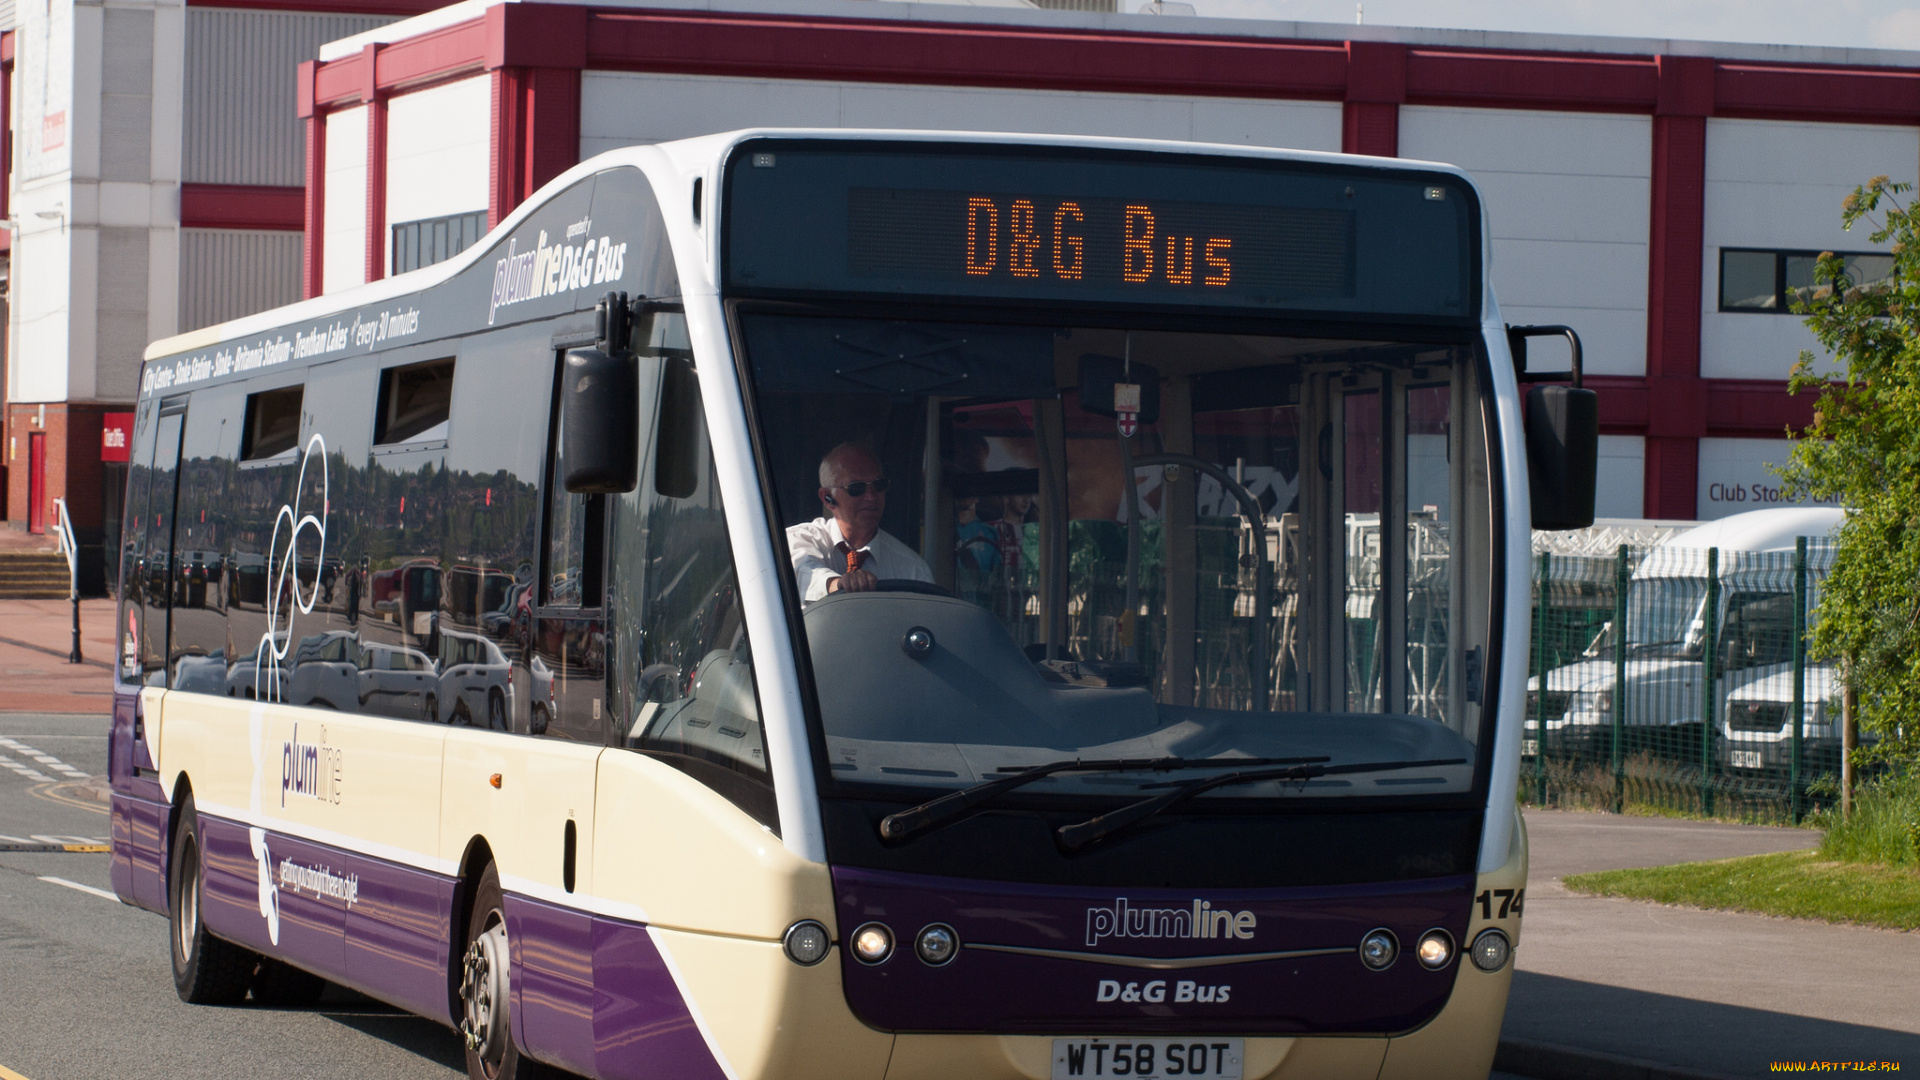 optare, versa, d&g, buses, 174, автомобили, автобусы, общественный, транспорт, автобус